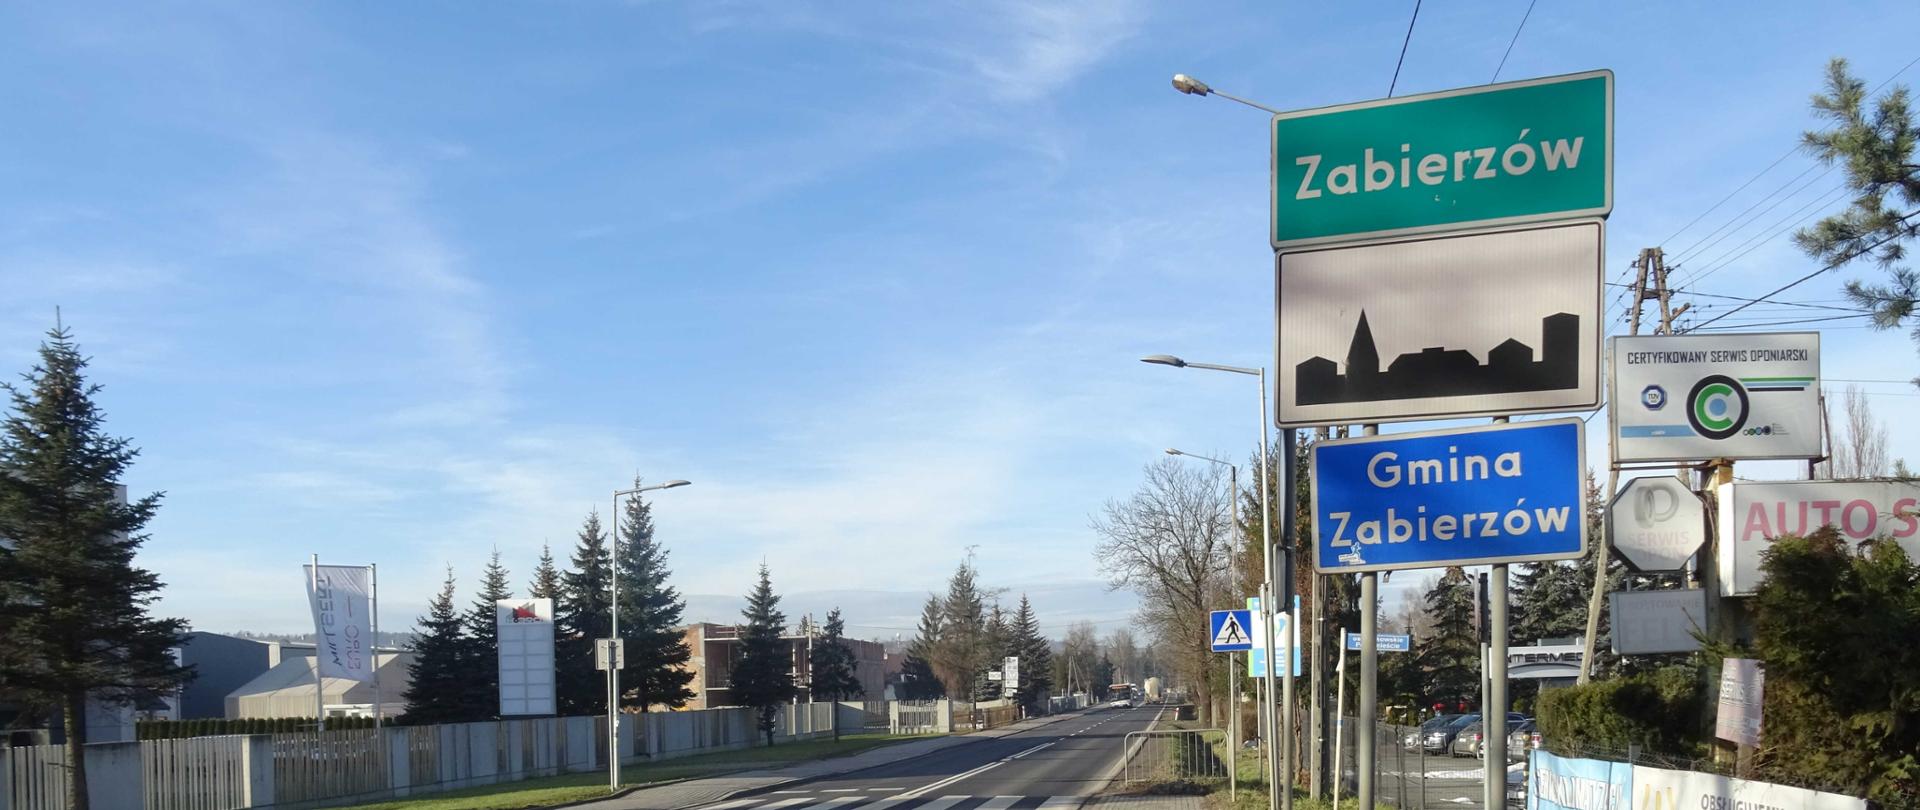 DK79 w Zabierzowie, po obu stronach chodnik i zabudowania, w oddali autobus i ciężarówka